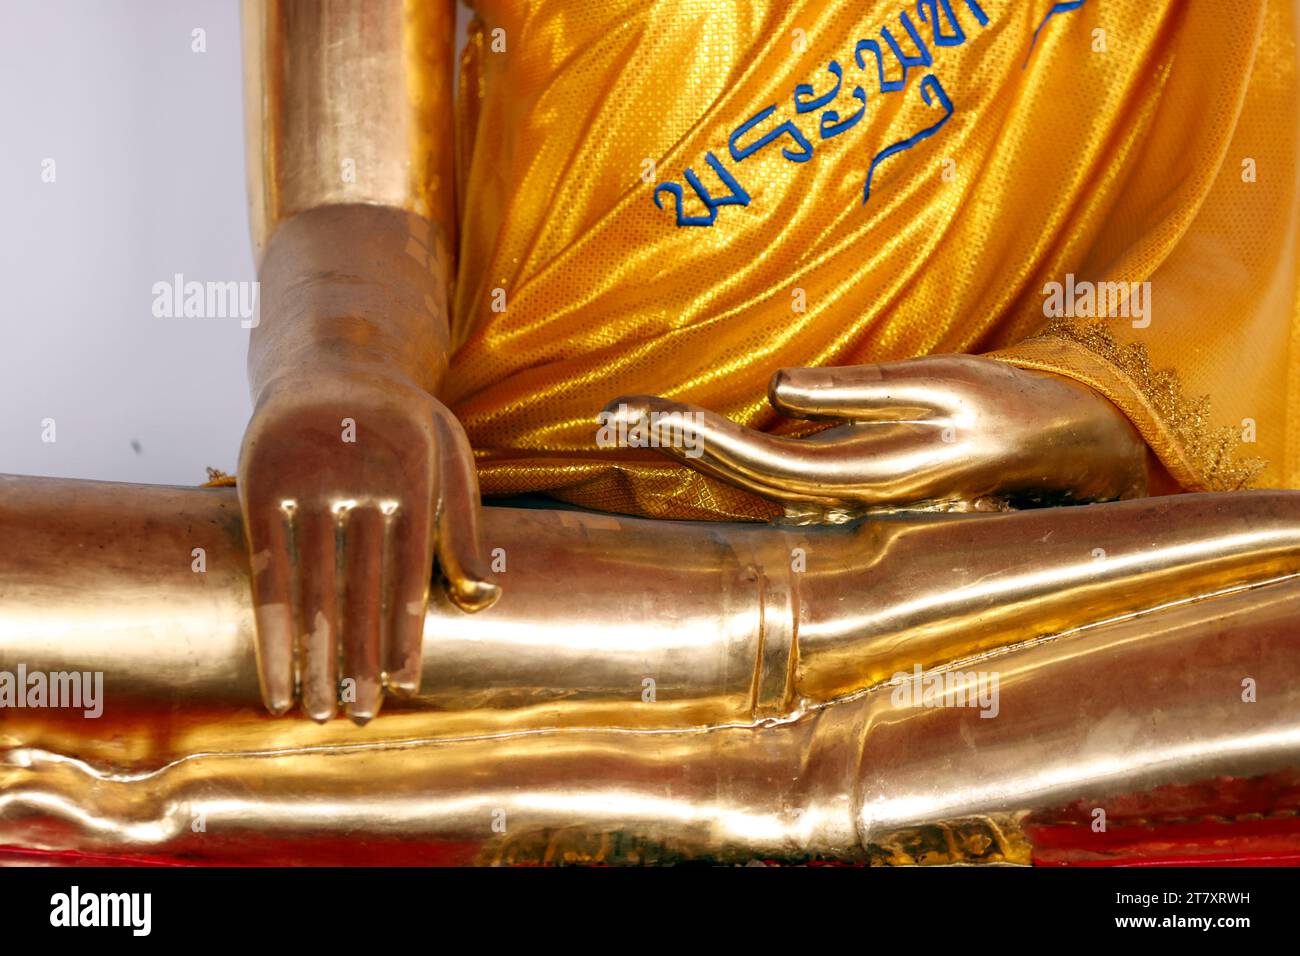 Statue de Bouddha doré, geste témoin de la terre, Wat Pho (Temple du Bouddha couché), Bangkok, Thaïlande, Asie du Sud-est, Asie Banque D'Images